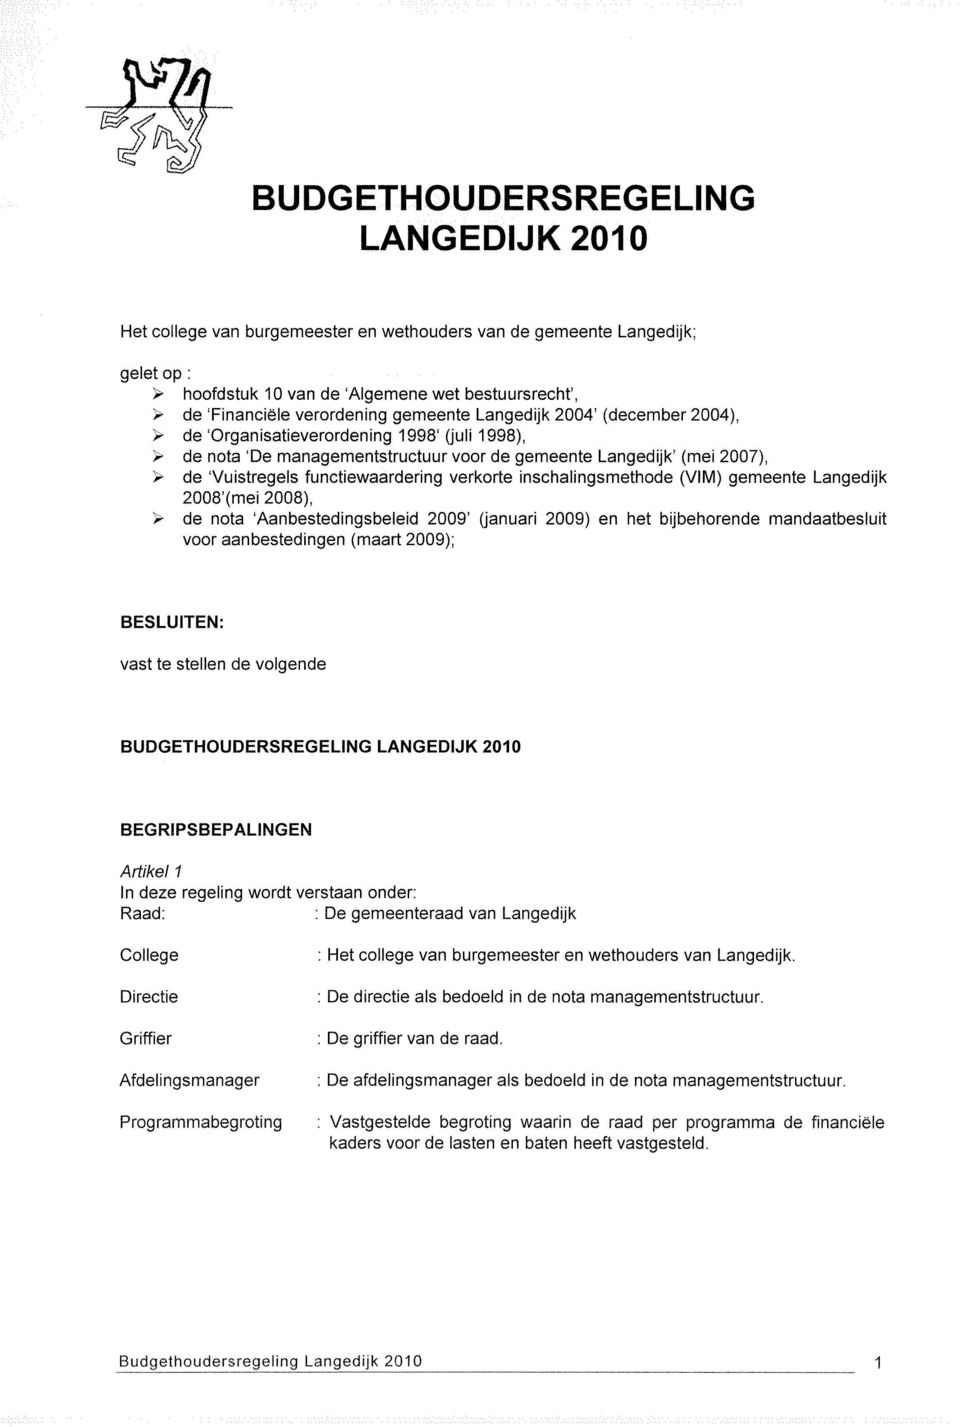 verkorte inschalingsmethode (VIM) gemeente Langedijk 2008'(mei 2008), " de nota 'Aanbestedingsbeleid 2009' (januari 2009) en het bijbehorende mandaatbesluit voor aanbestedingen (maart 2009);